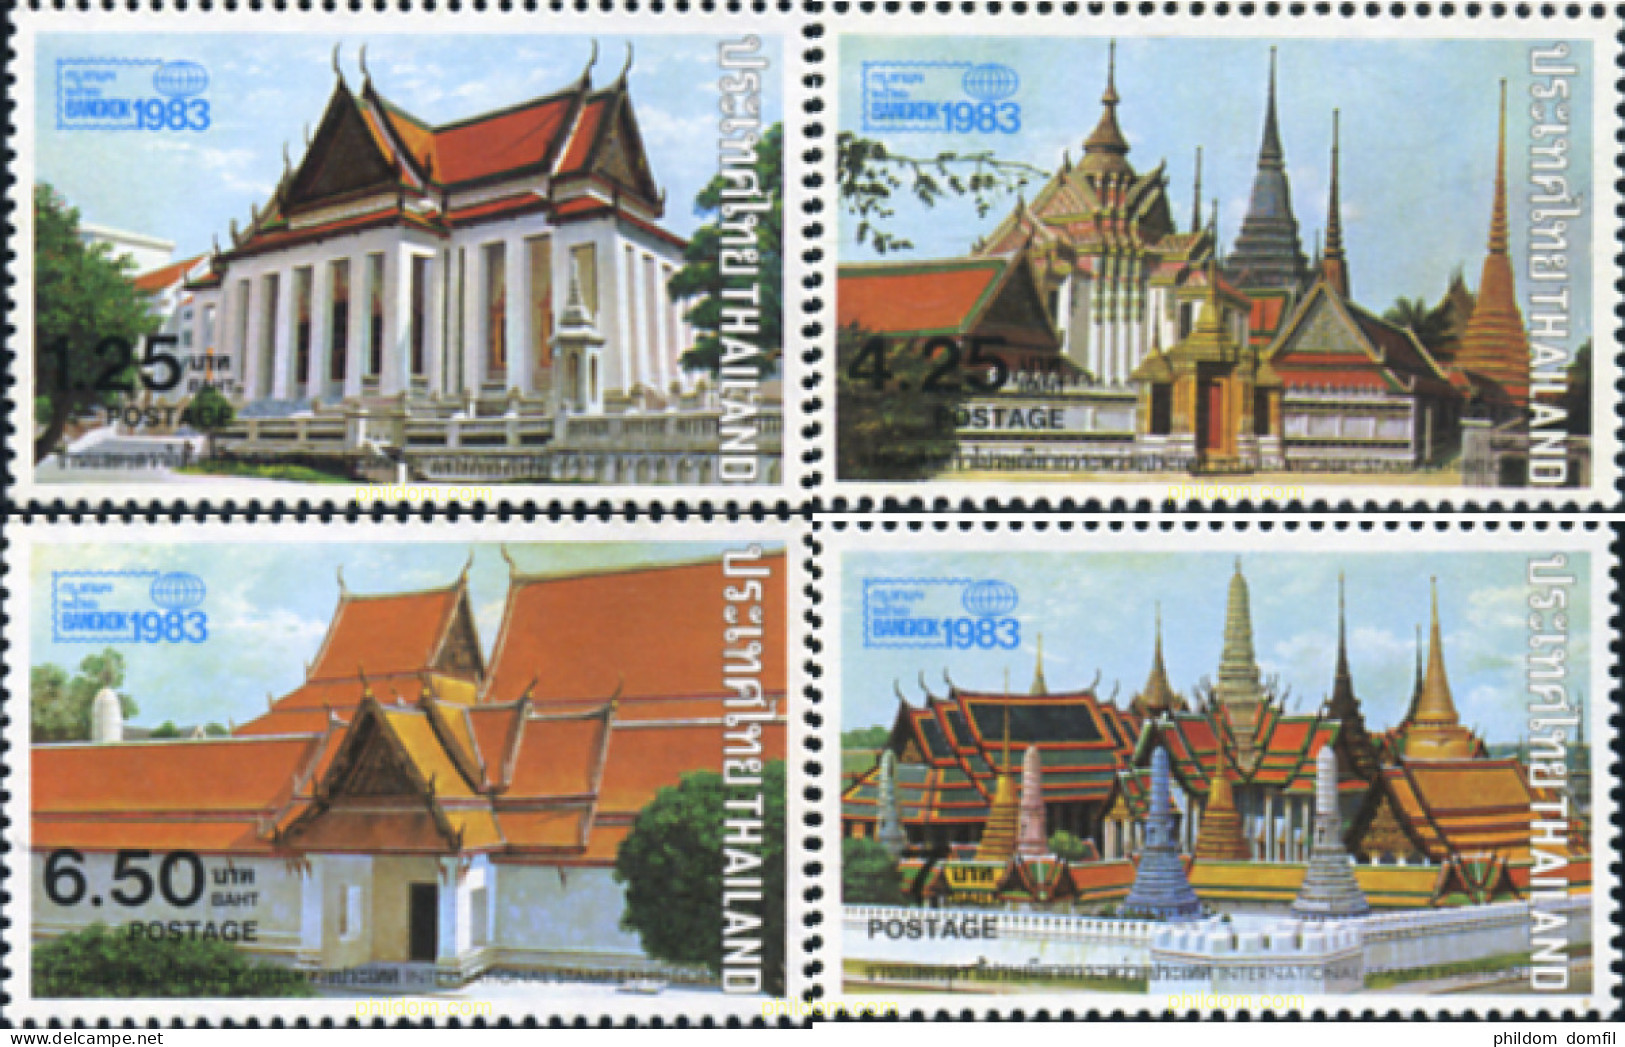 362010 MNH TAILANDIA 1982 BANGKOK 1983. EXPOSICION FILATELICA INTERNACIONAL - Thailand